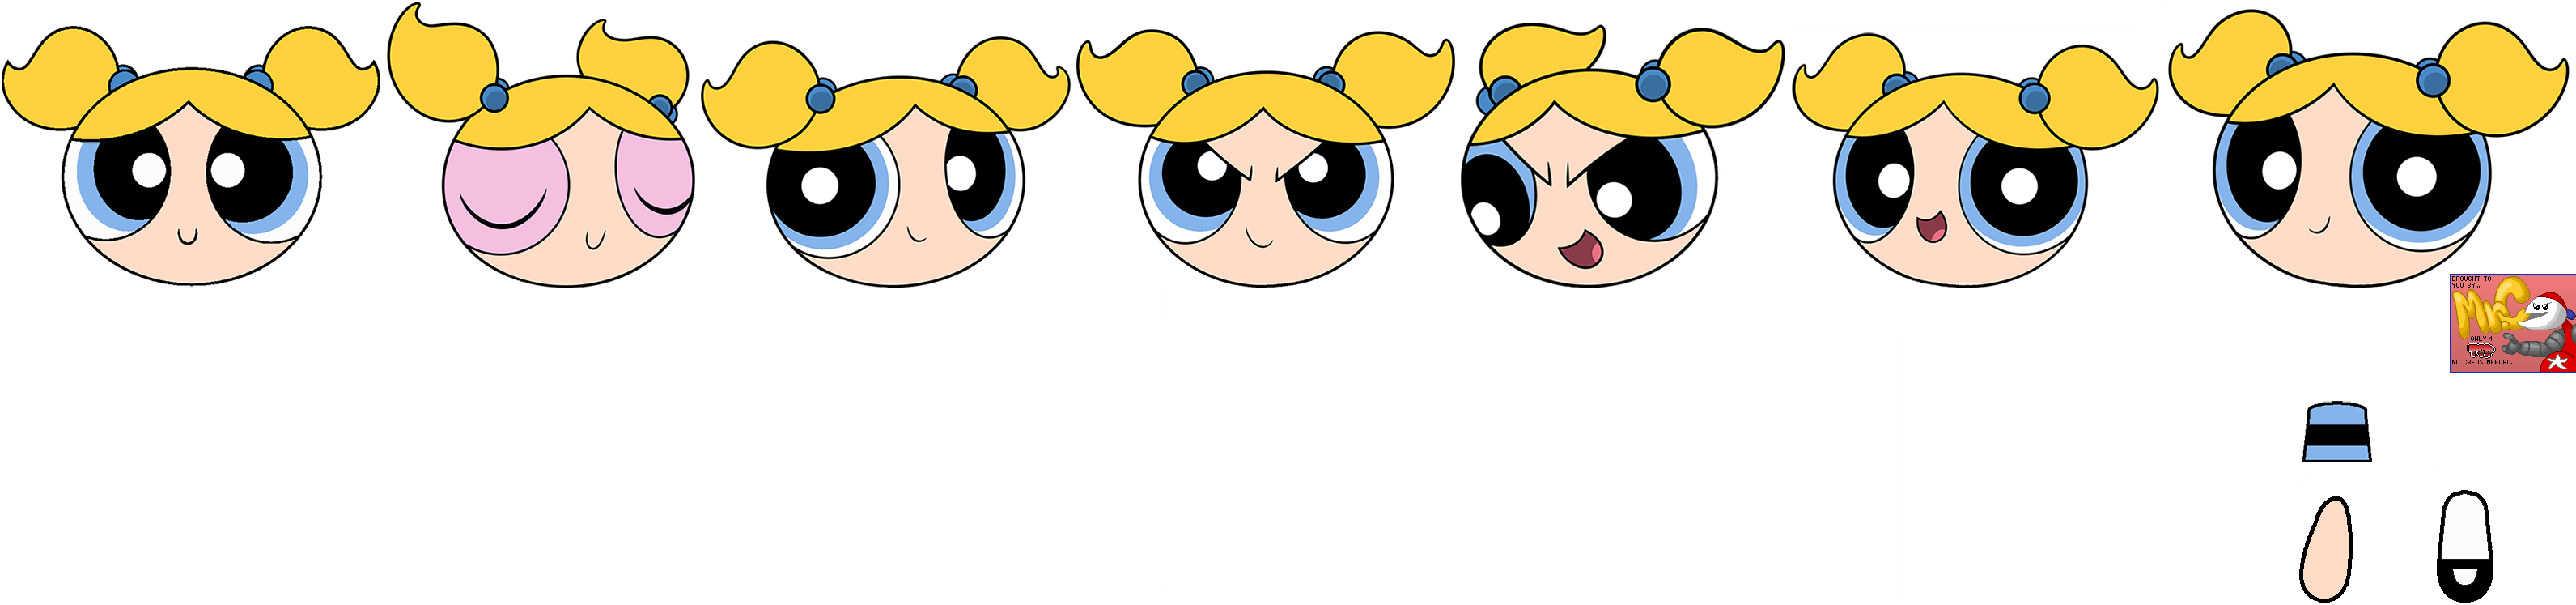 Powerpuff Girls Story Maker - Bubbles